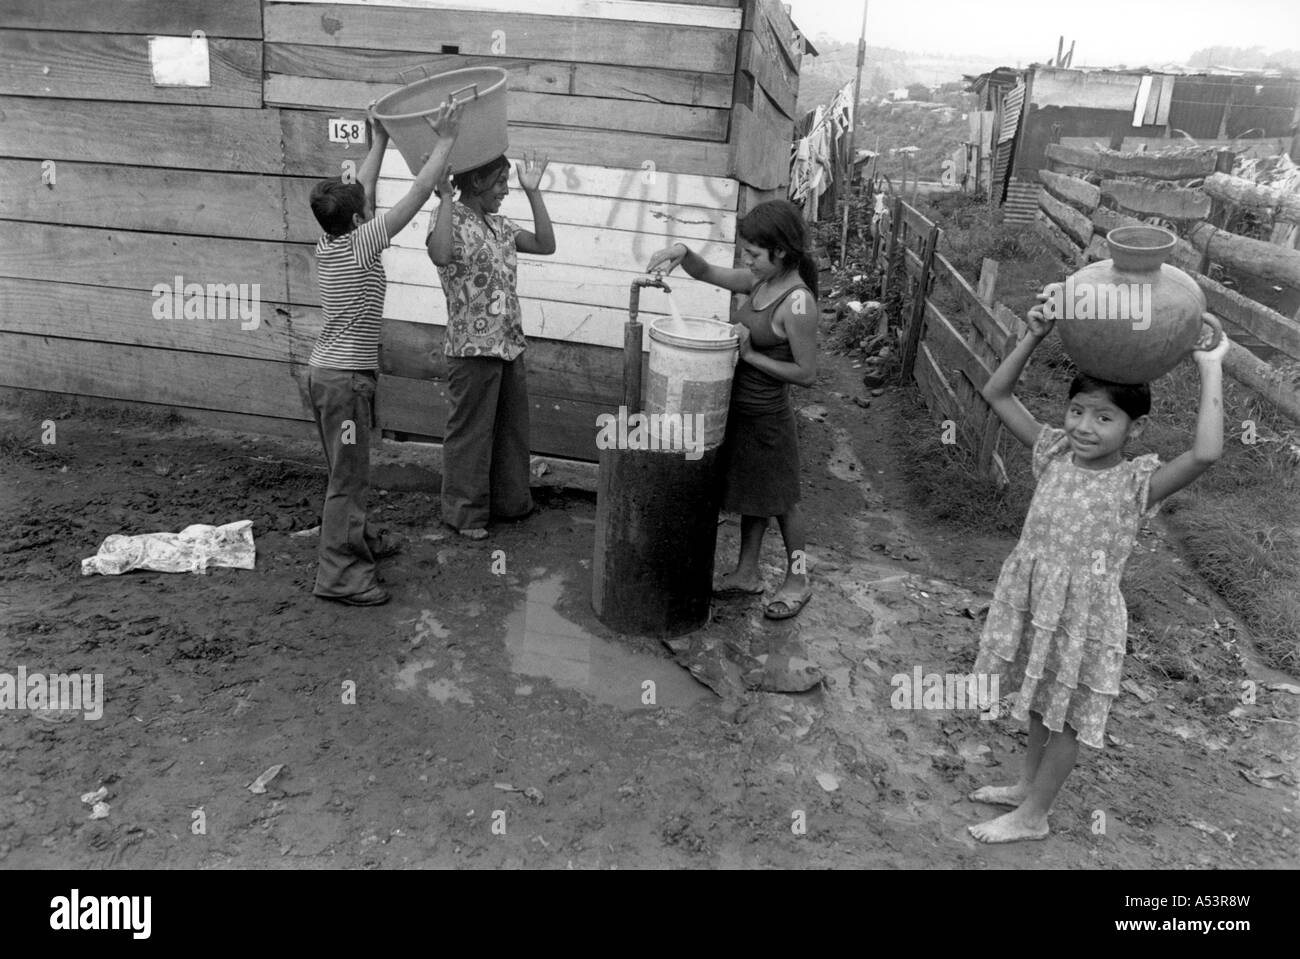 Painet ha1822 360 in bianco e nero di raccolta acqua di rubinetto i bambini delle baraccopoli di Città del Guatemala, paese nazione in via di sviluppo meno Foto Stock